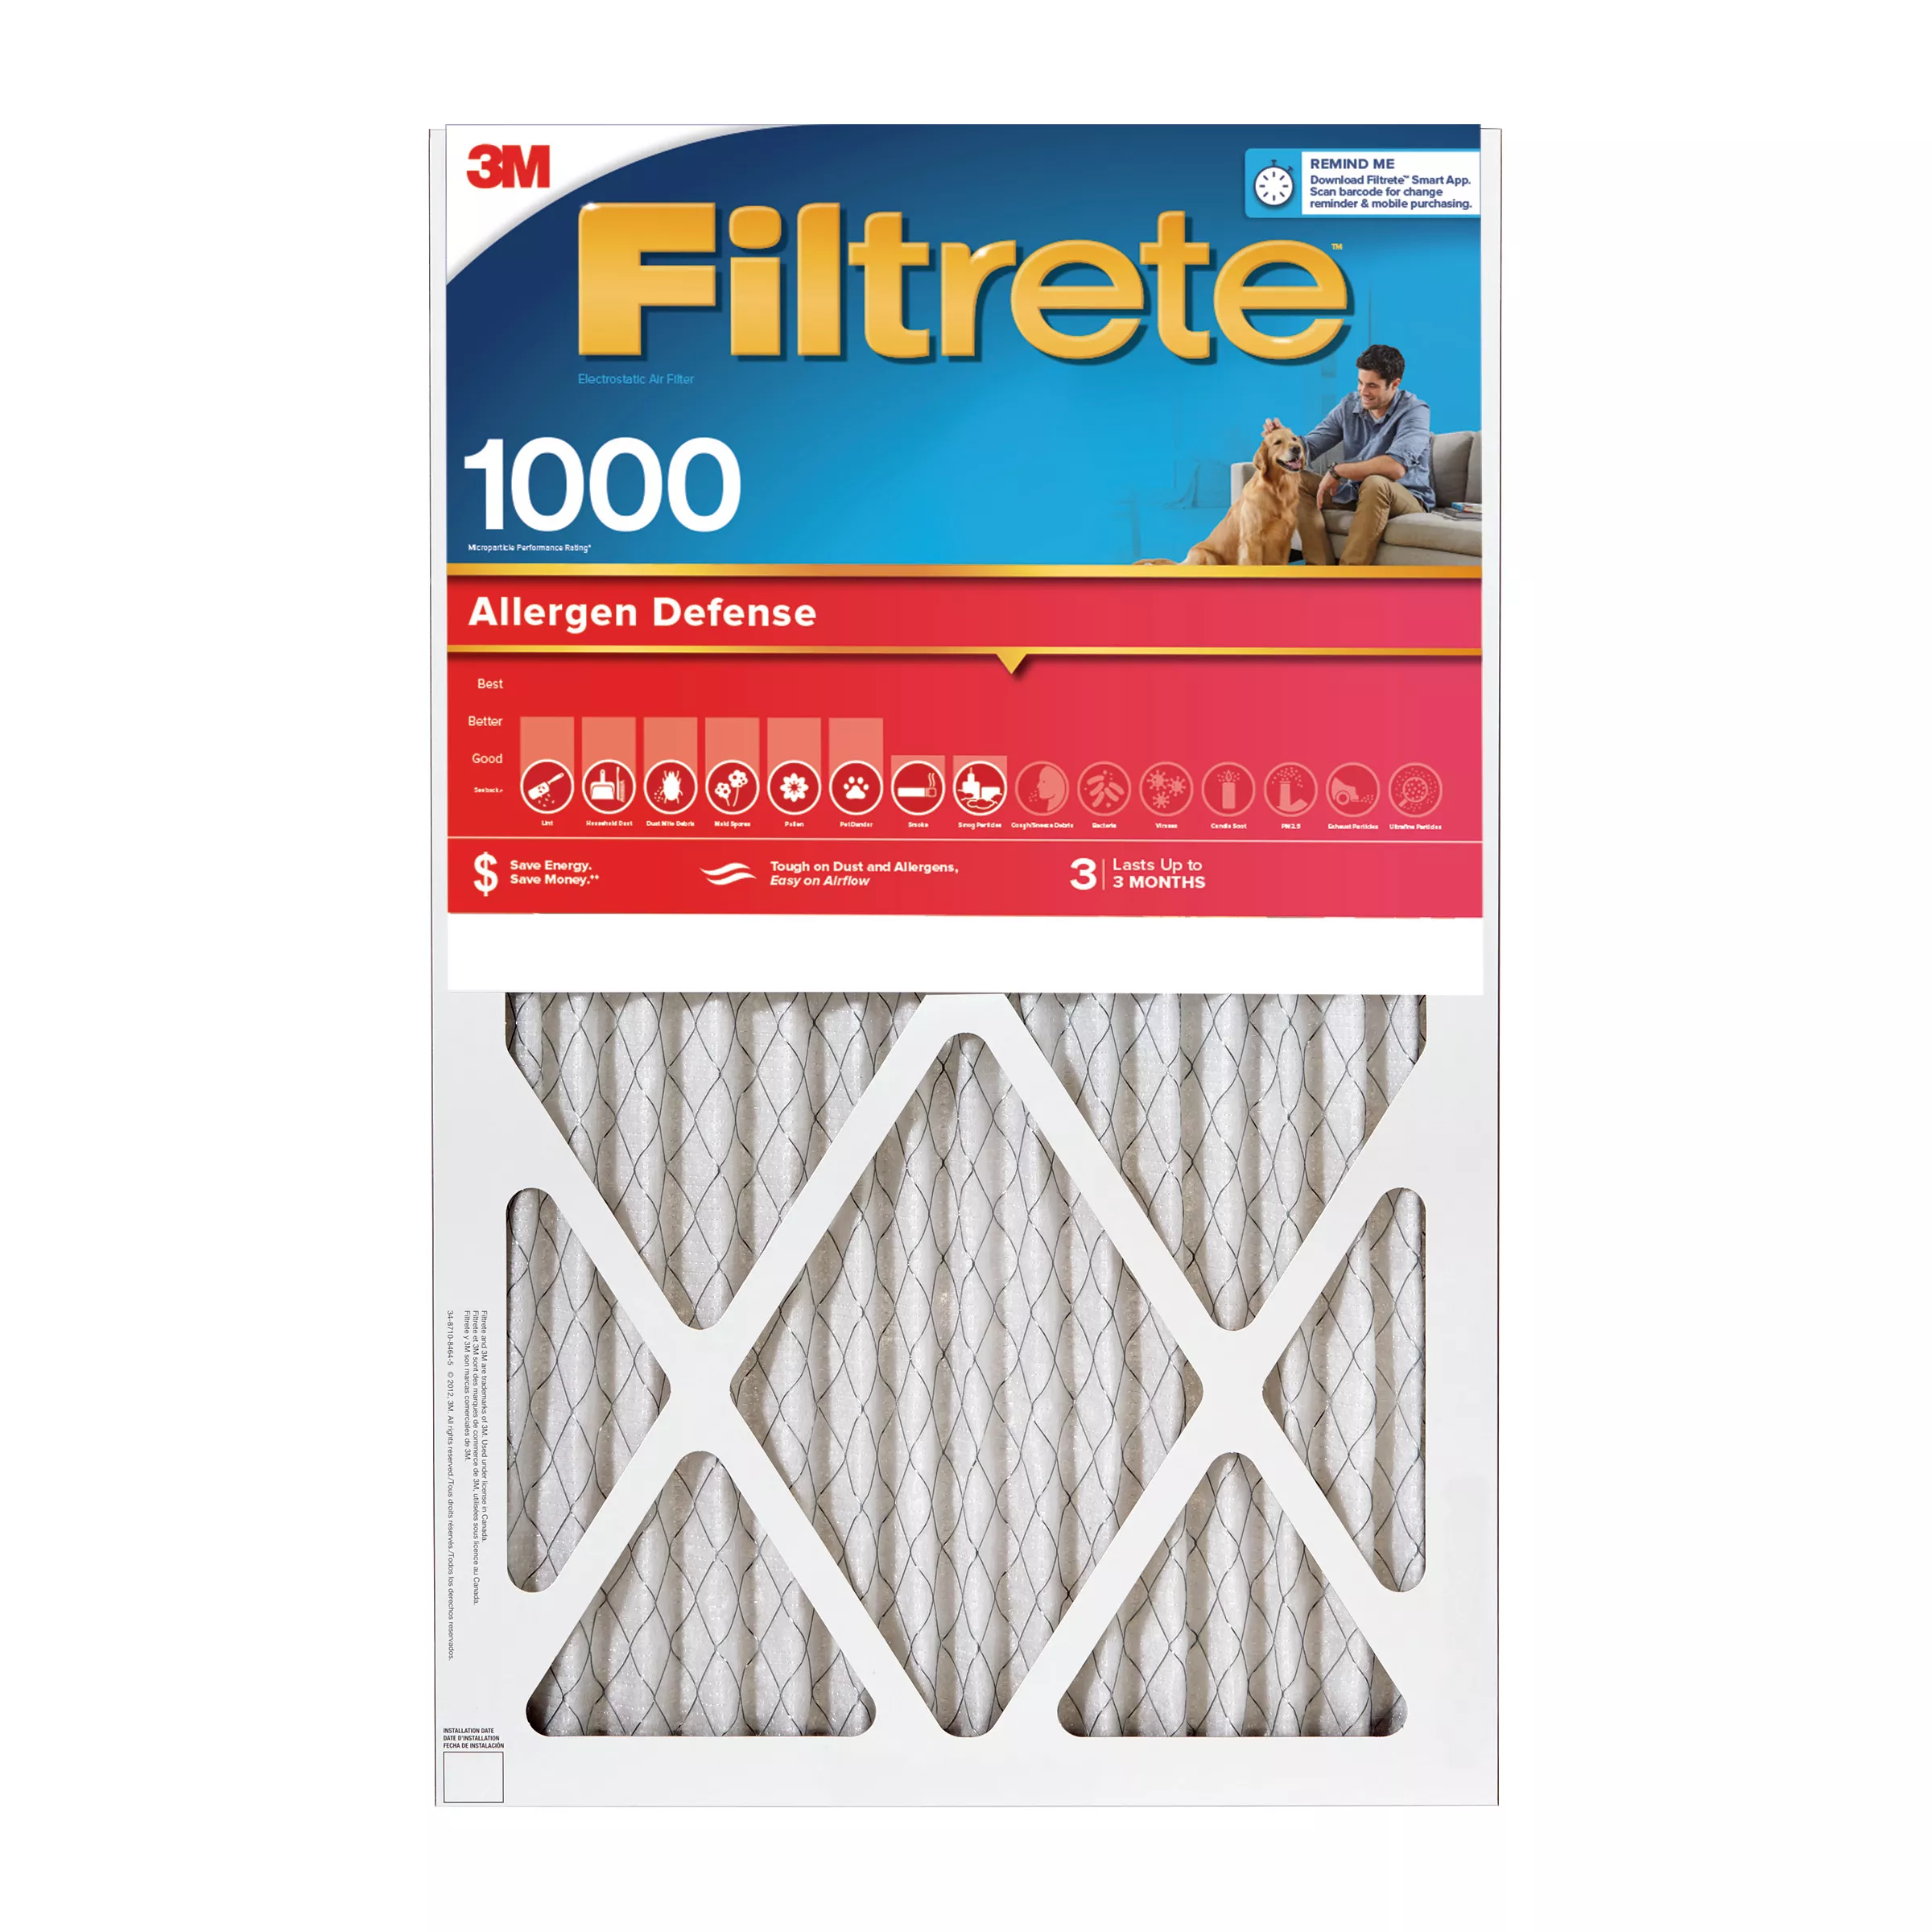 Filtrete™ Allergen Defense Air Filter, 1000 MPR, 9829-4, 17.5 in x 23.5 in x 1 in (44,4 cm x 59,6 cm x 2,5 cm)